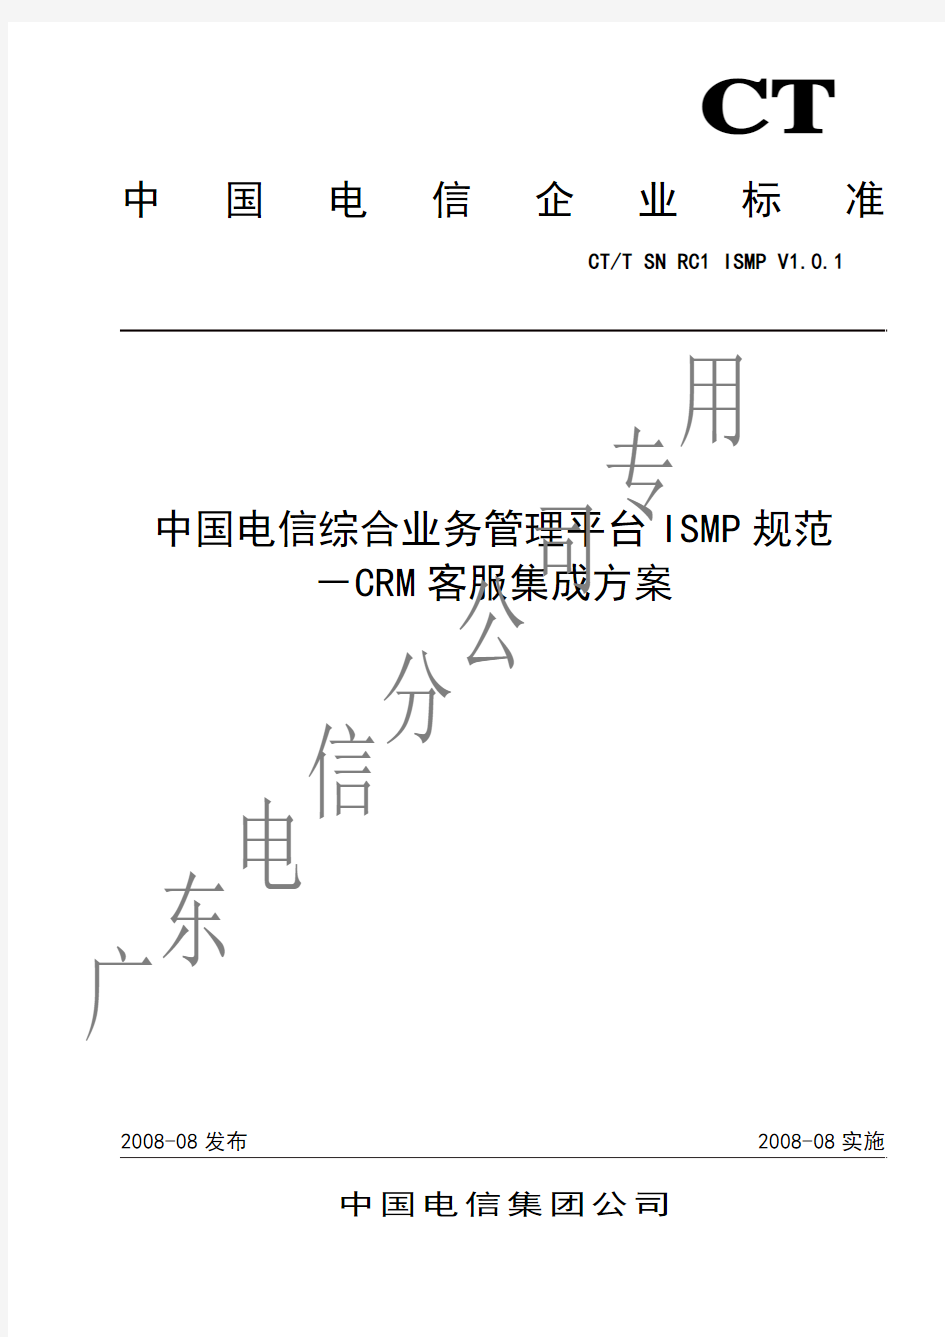 中国电信综合业务管理平台ISMP规范-ISMP与CRM 客服系统集成方案(RC1.0.1)-unprotected